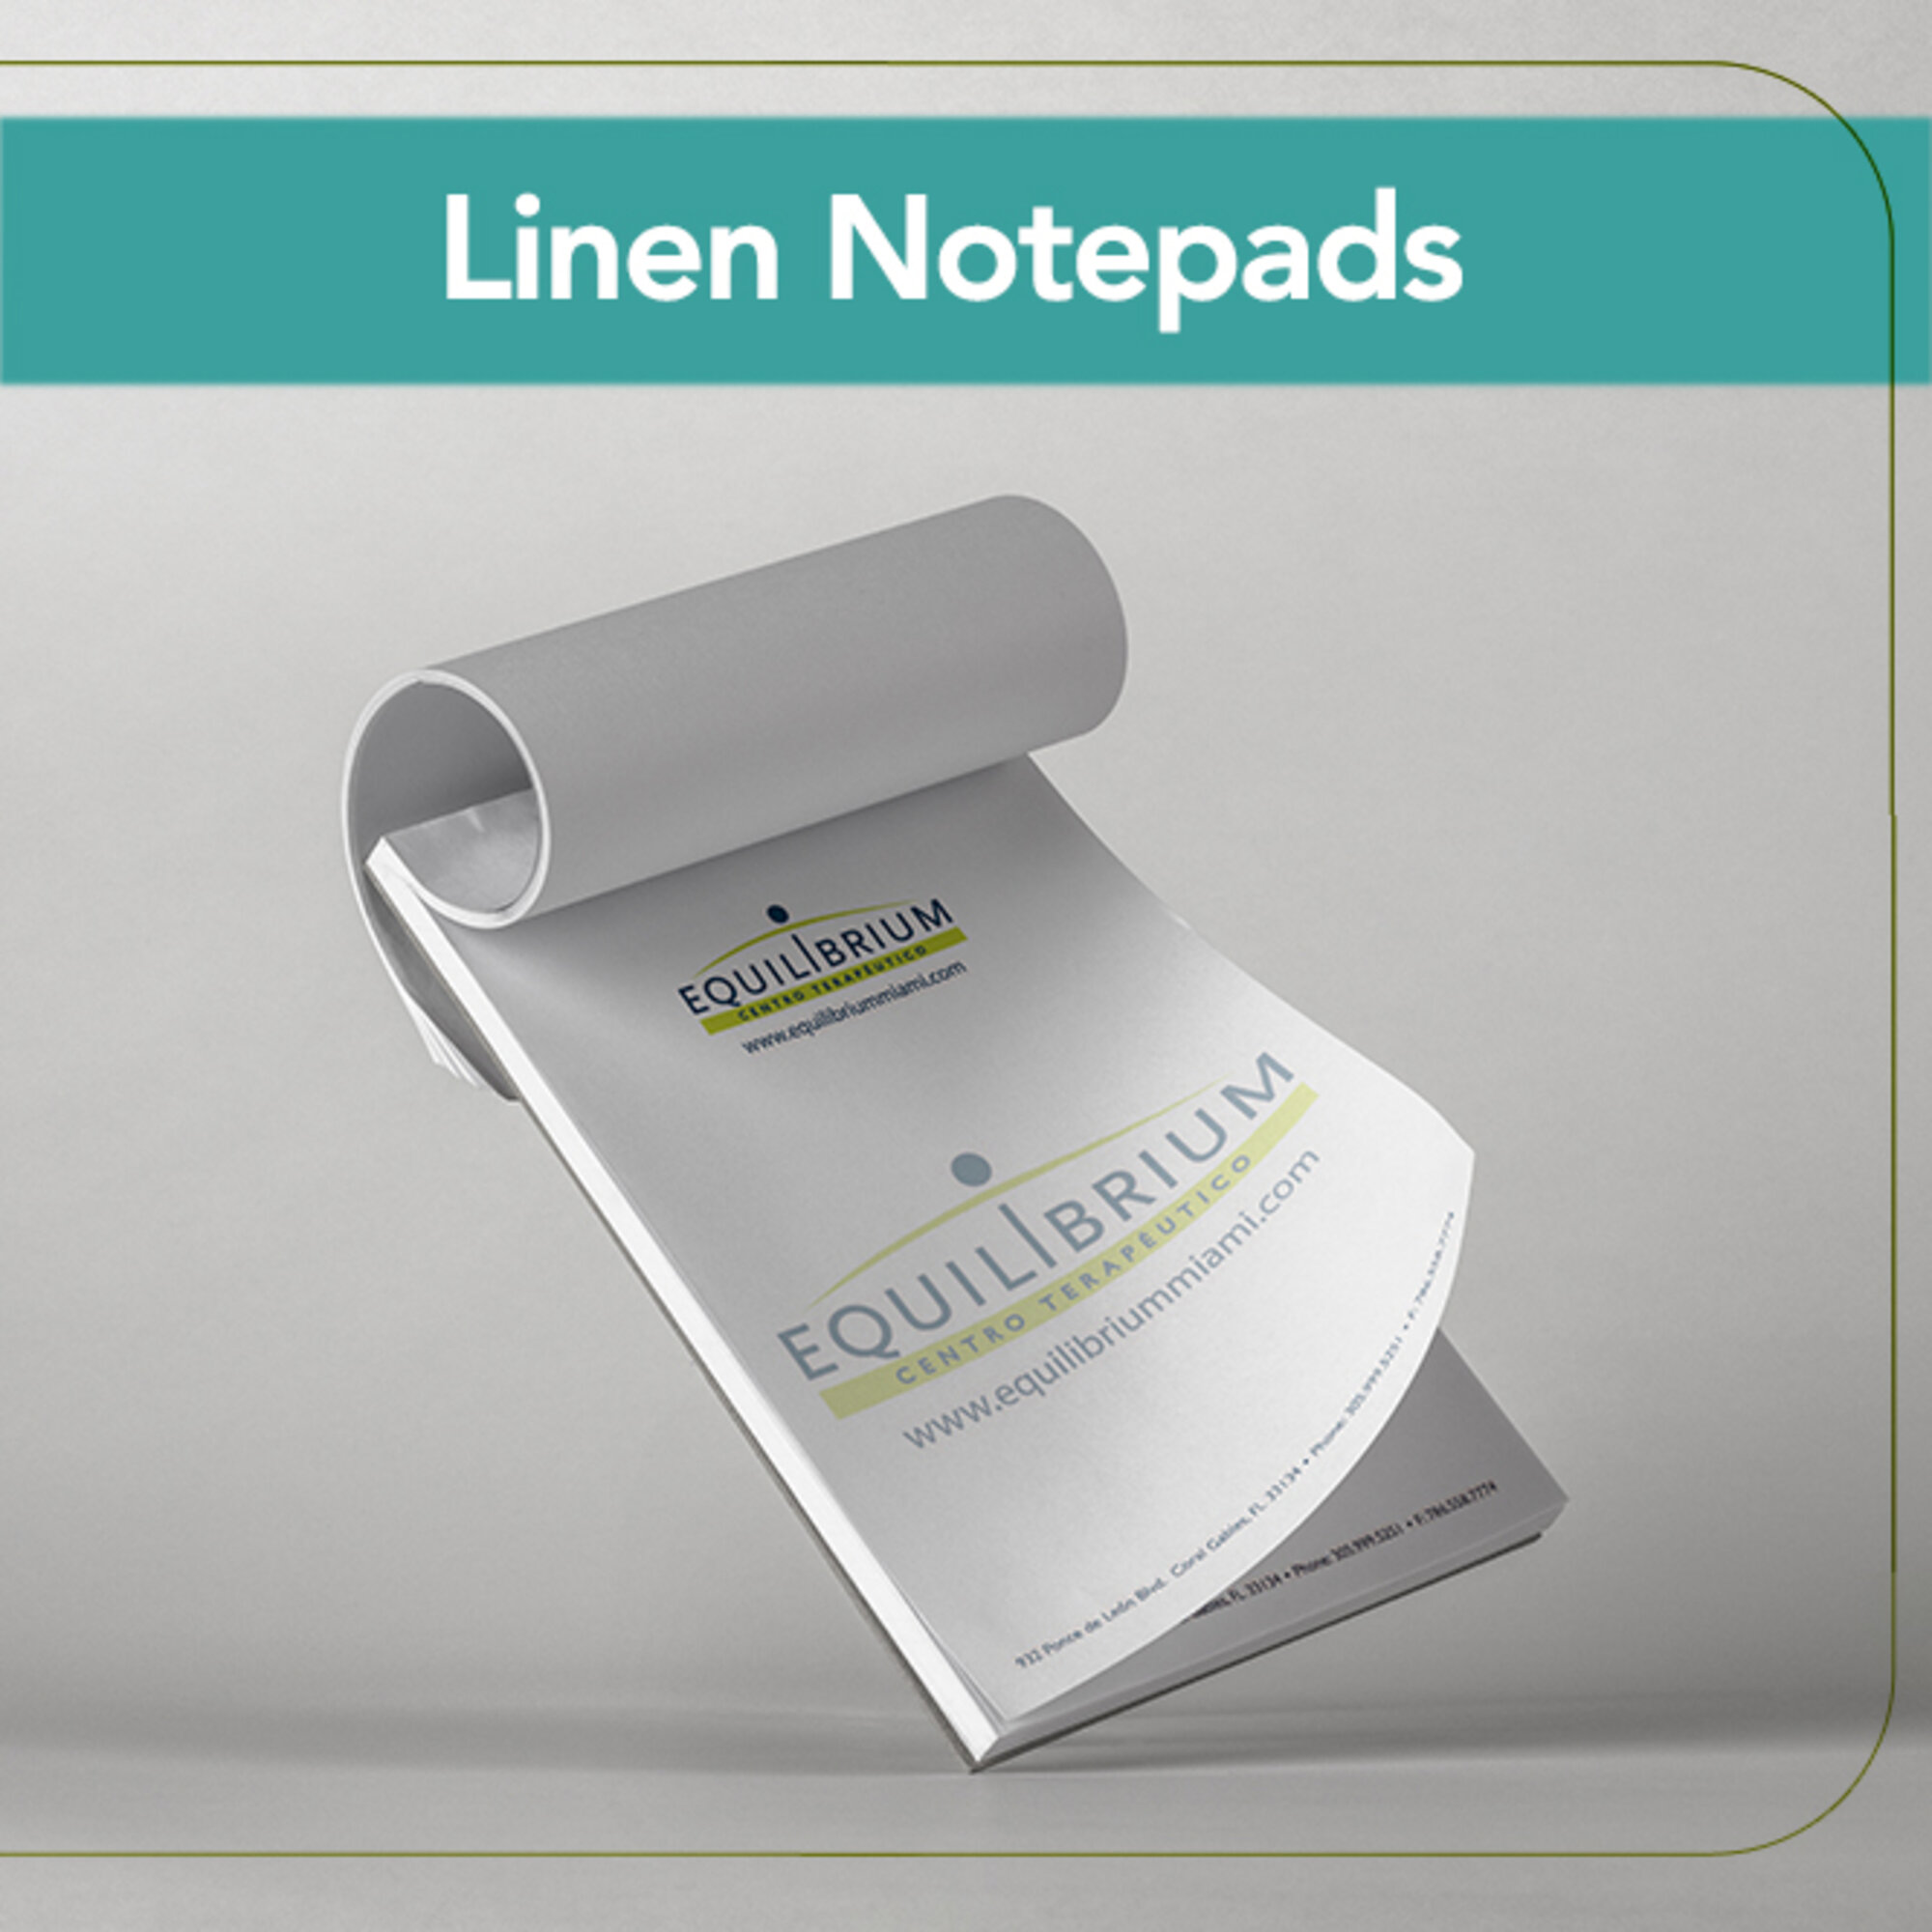 Linen Notepads